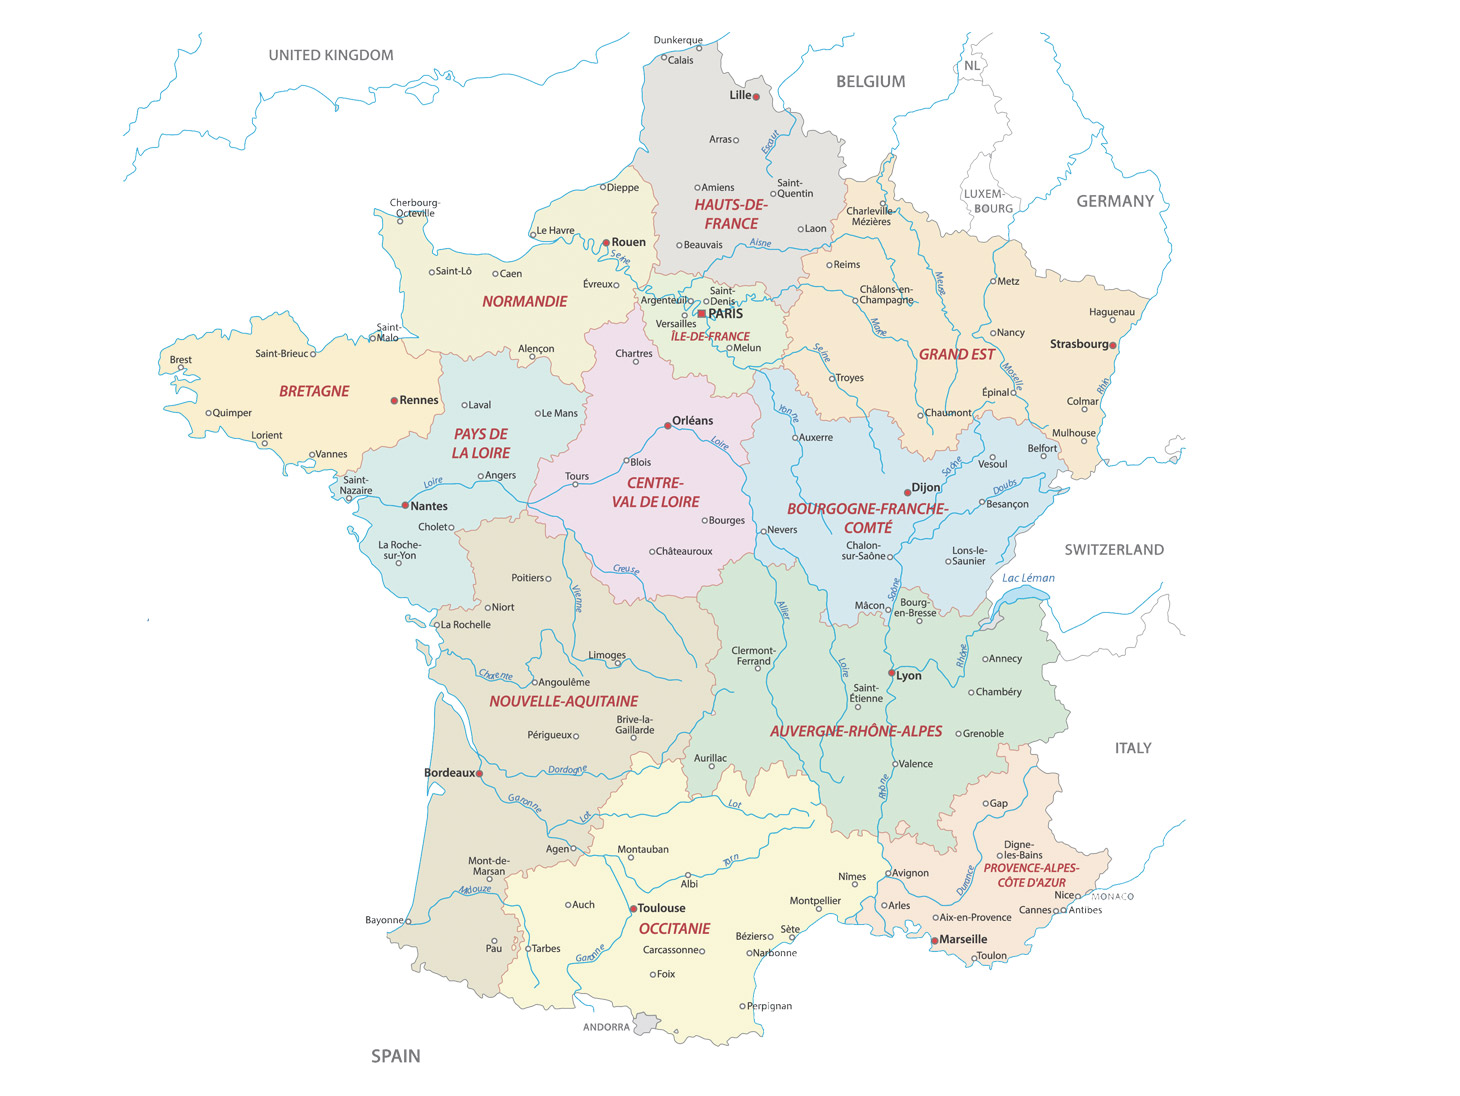 Loira e Poitou Charentais